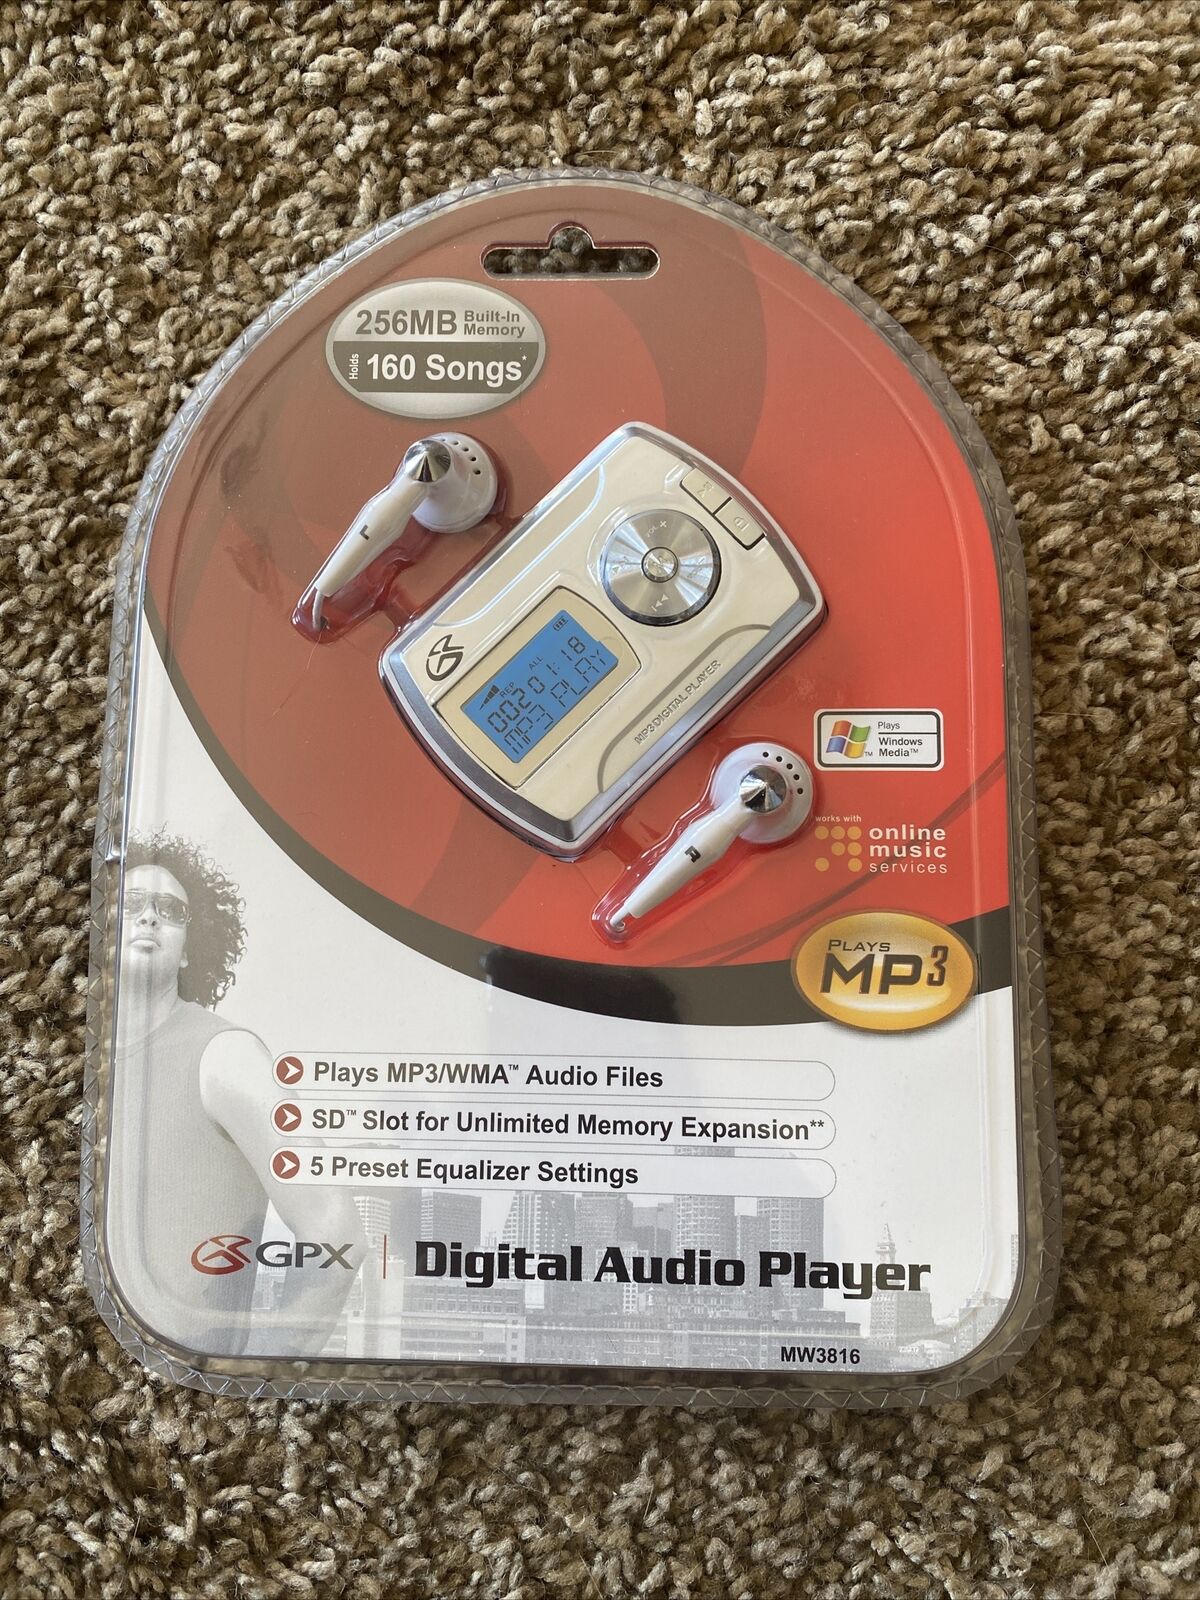 GPX Digital Audio Player Popular popular Discount is also underway